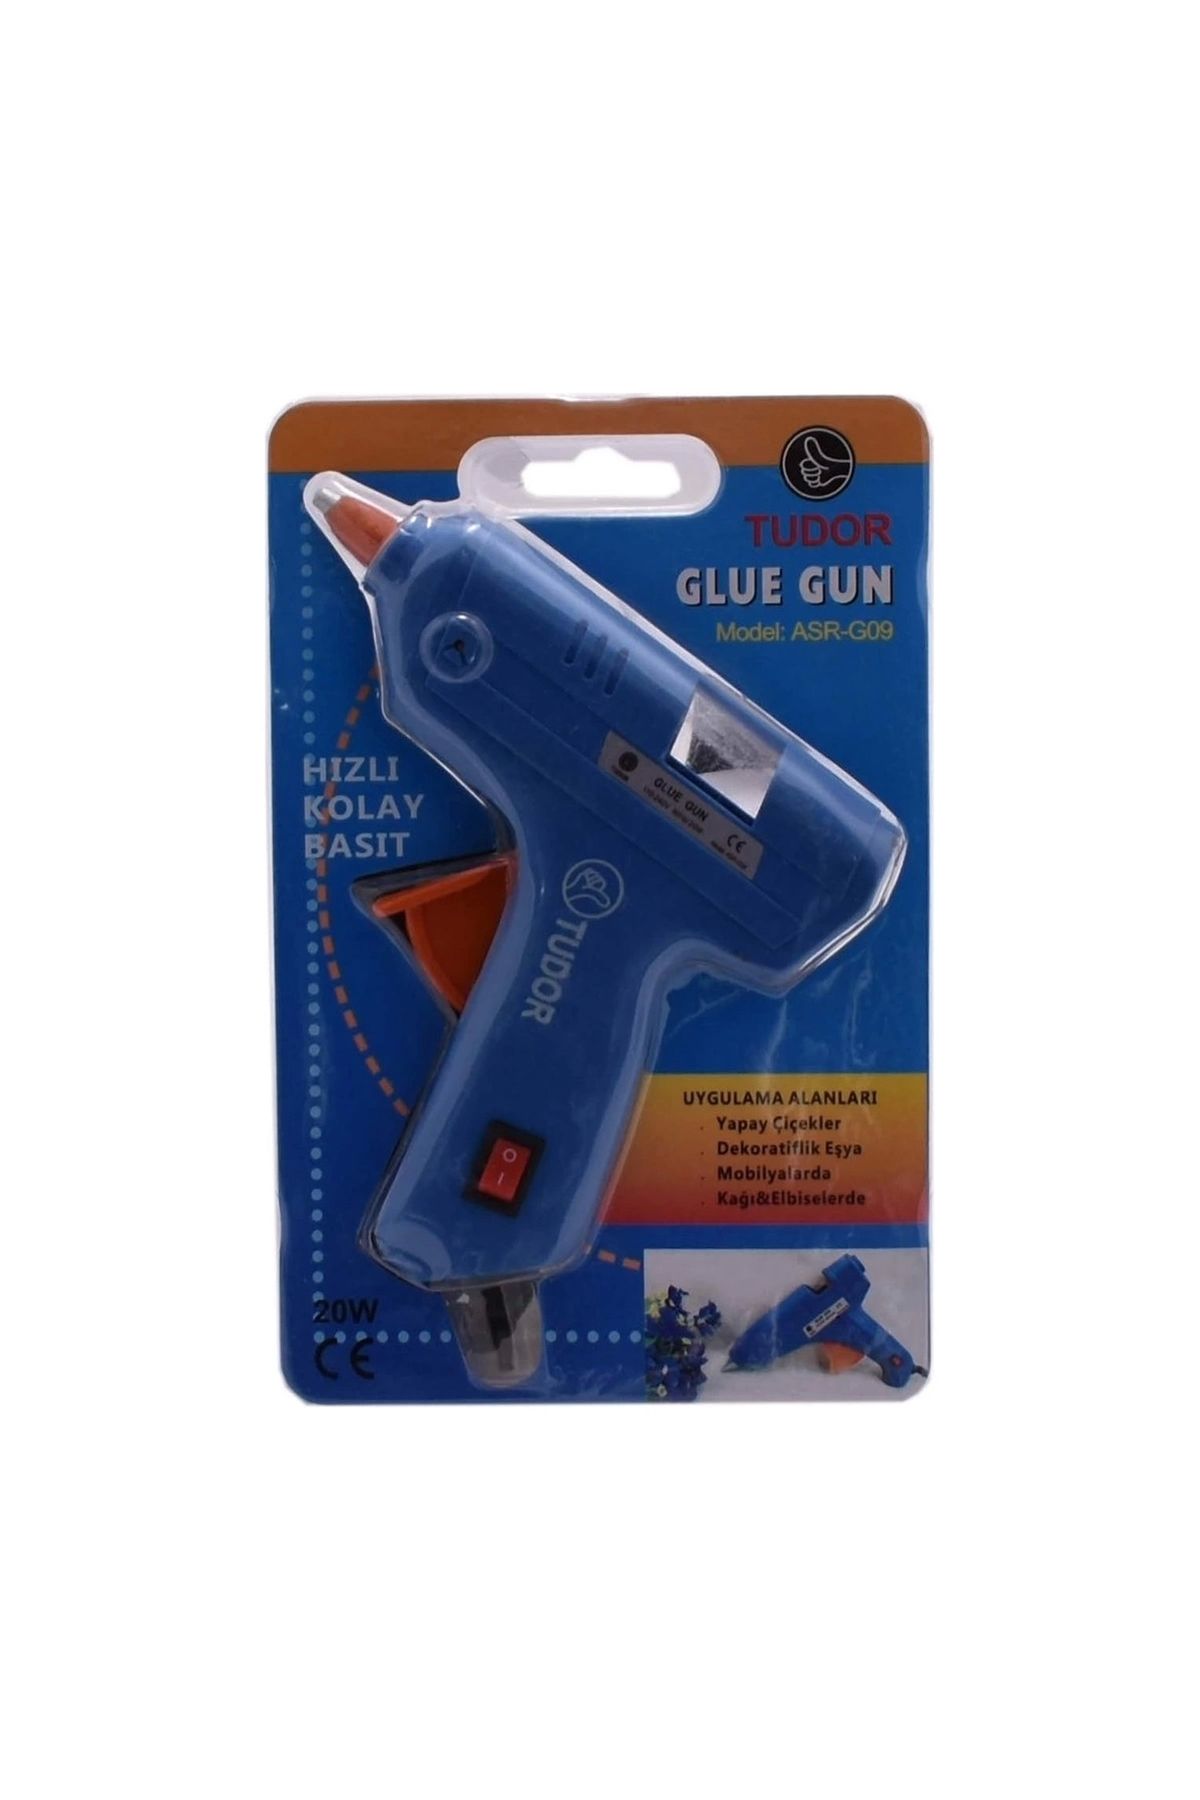 ADEKD Küçük Mum Silikon Tabancası Asr-G09 - Glue Gun